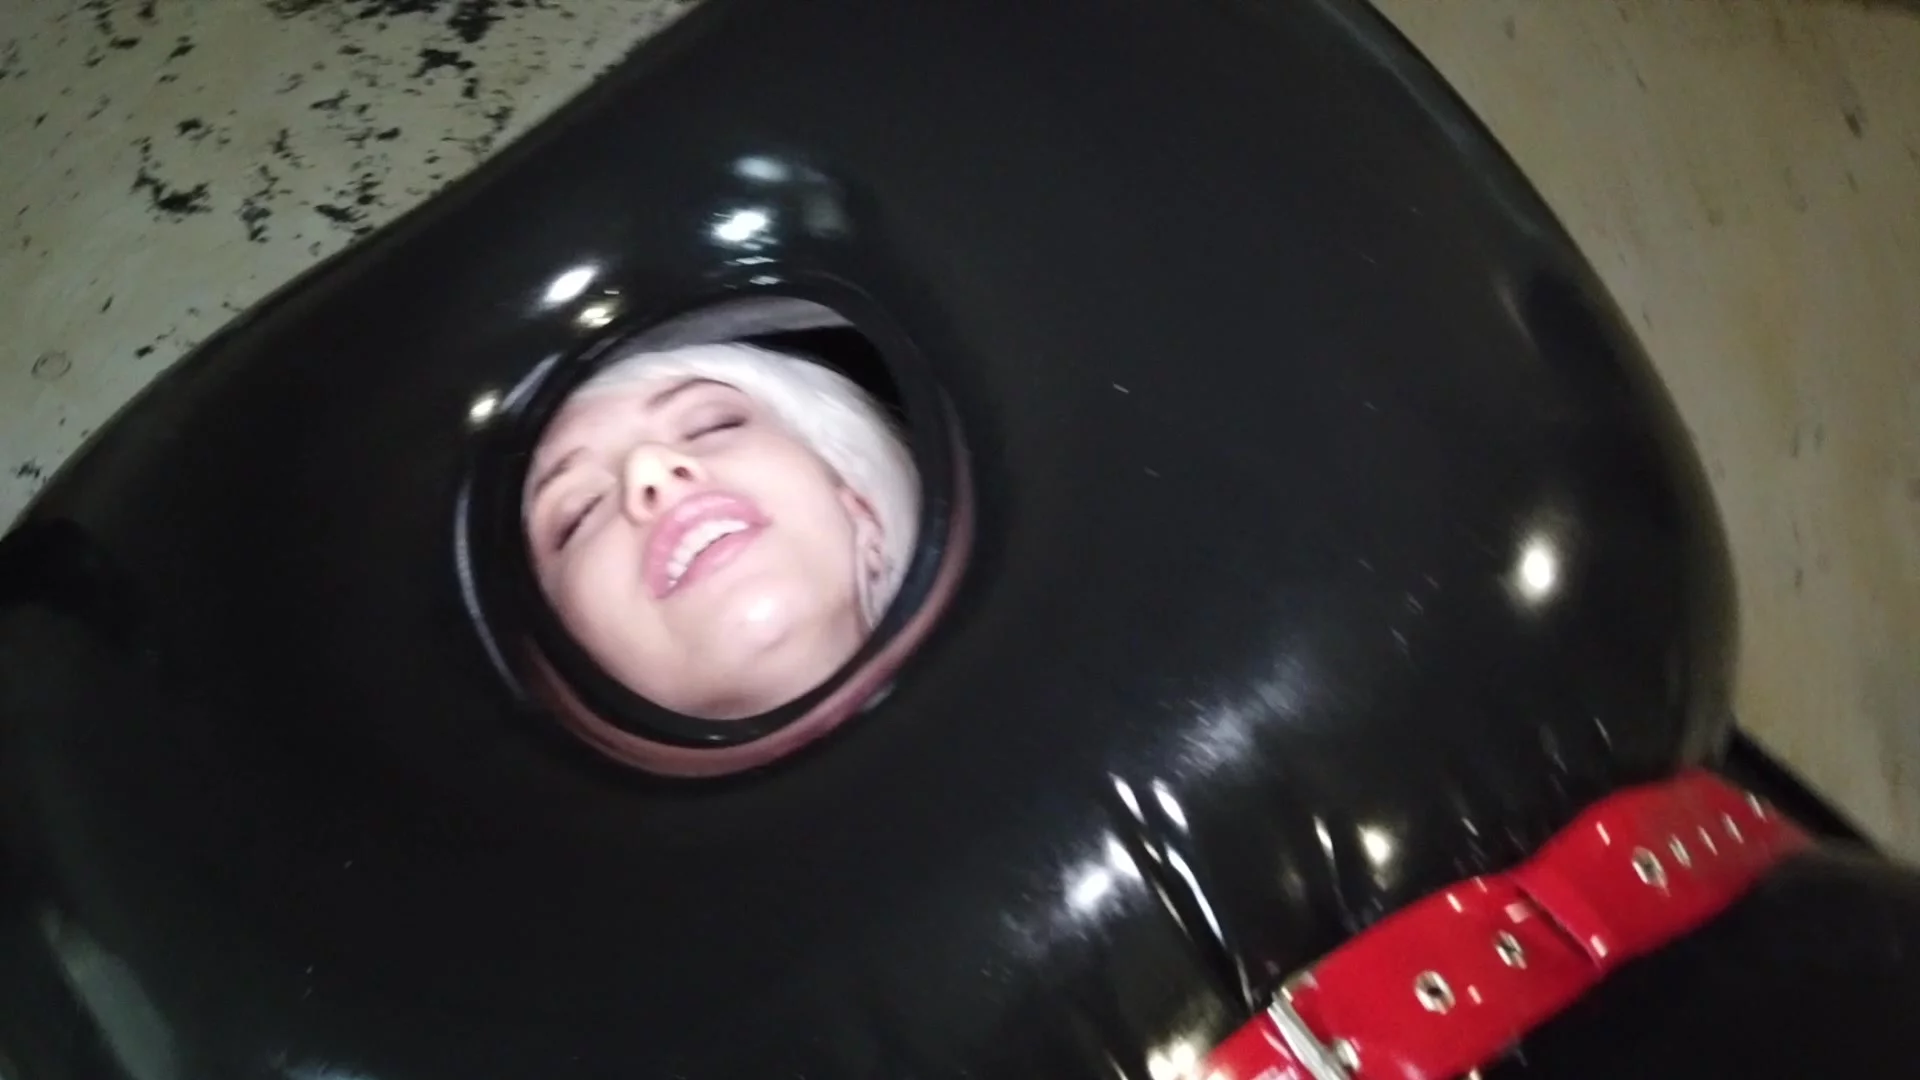 BoundHub - Inflatable Rubber Sleepsack